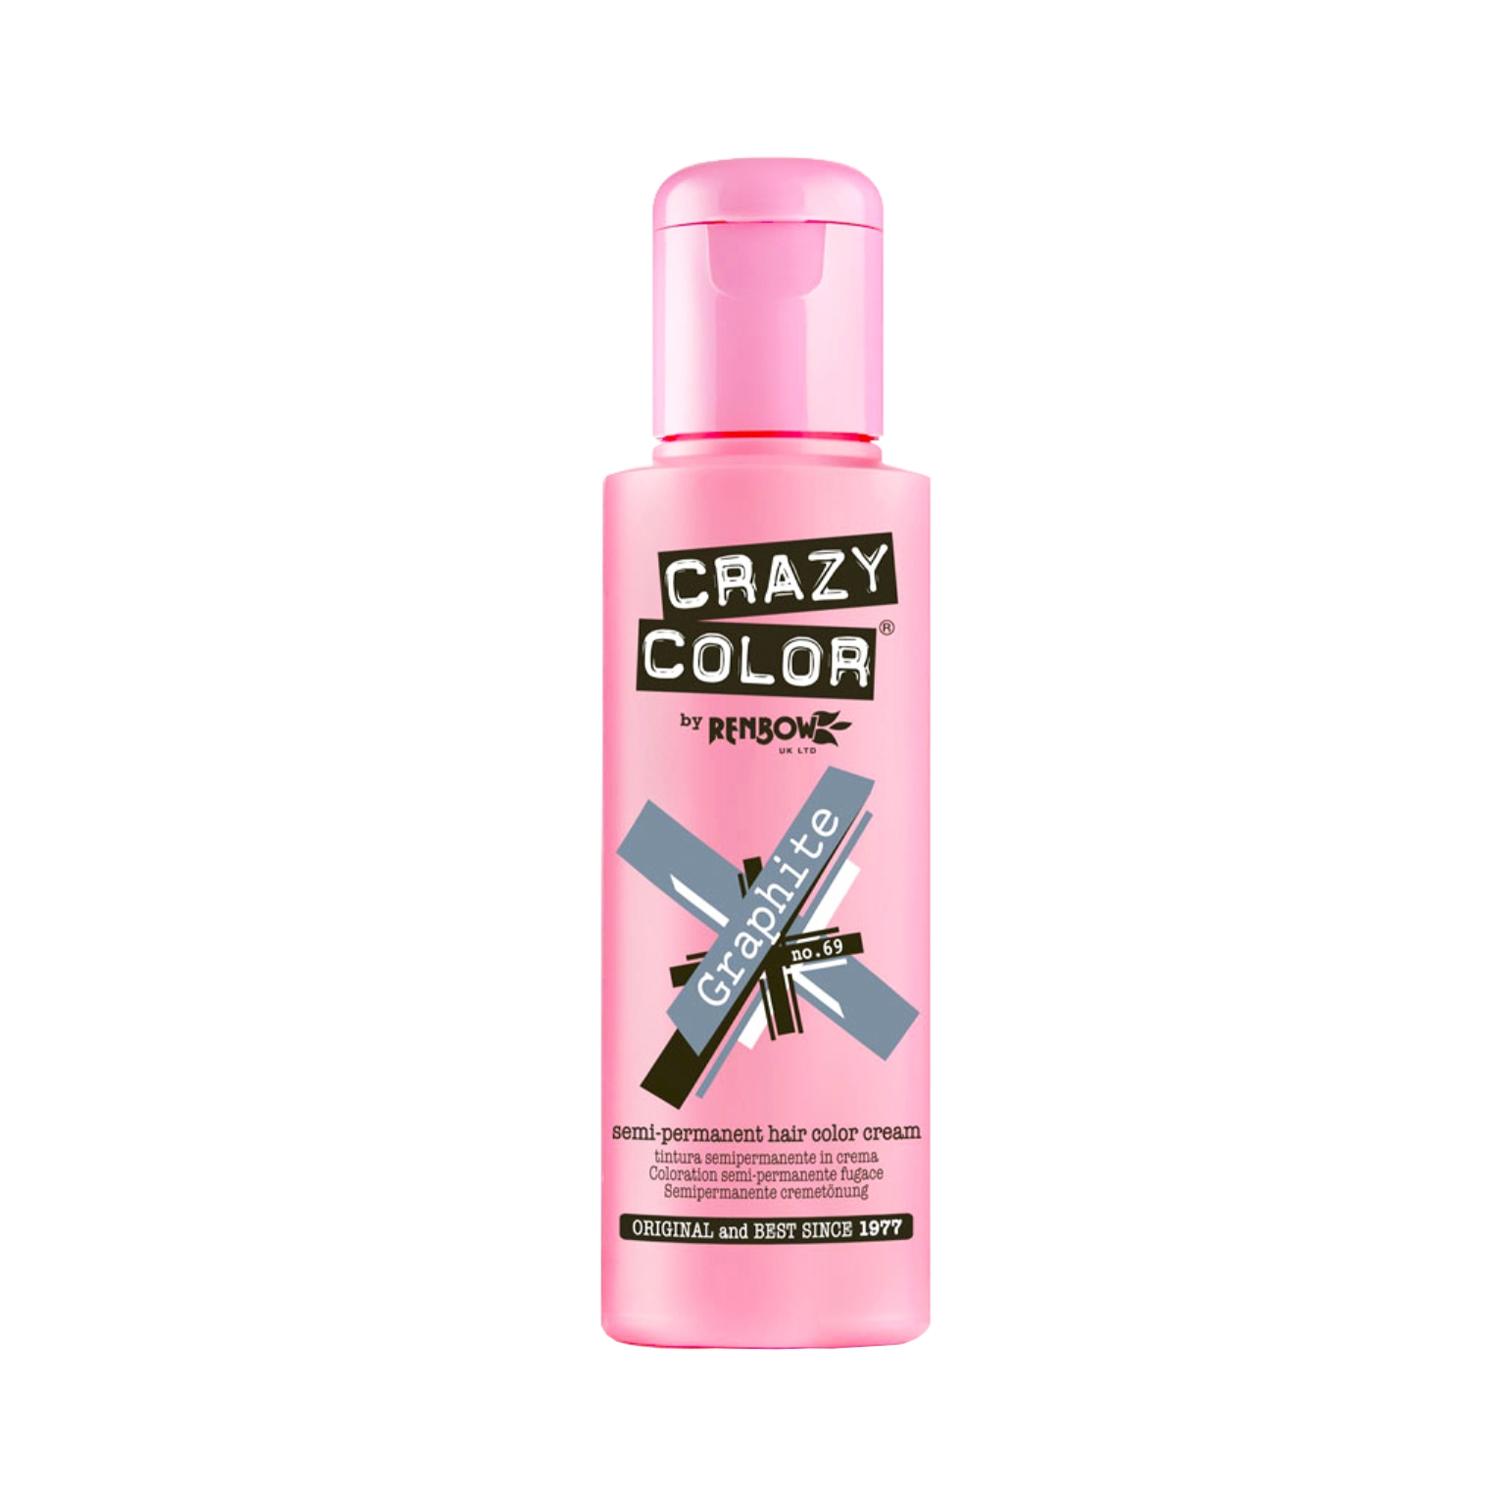 Crazy Color Semi Permanent Hair Color Cream - 69 Graphite (100ml)